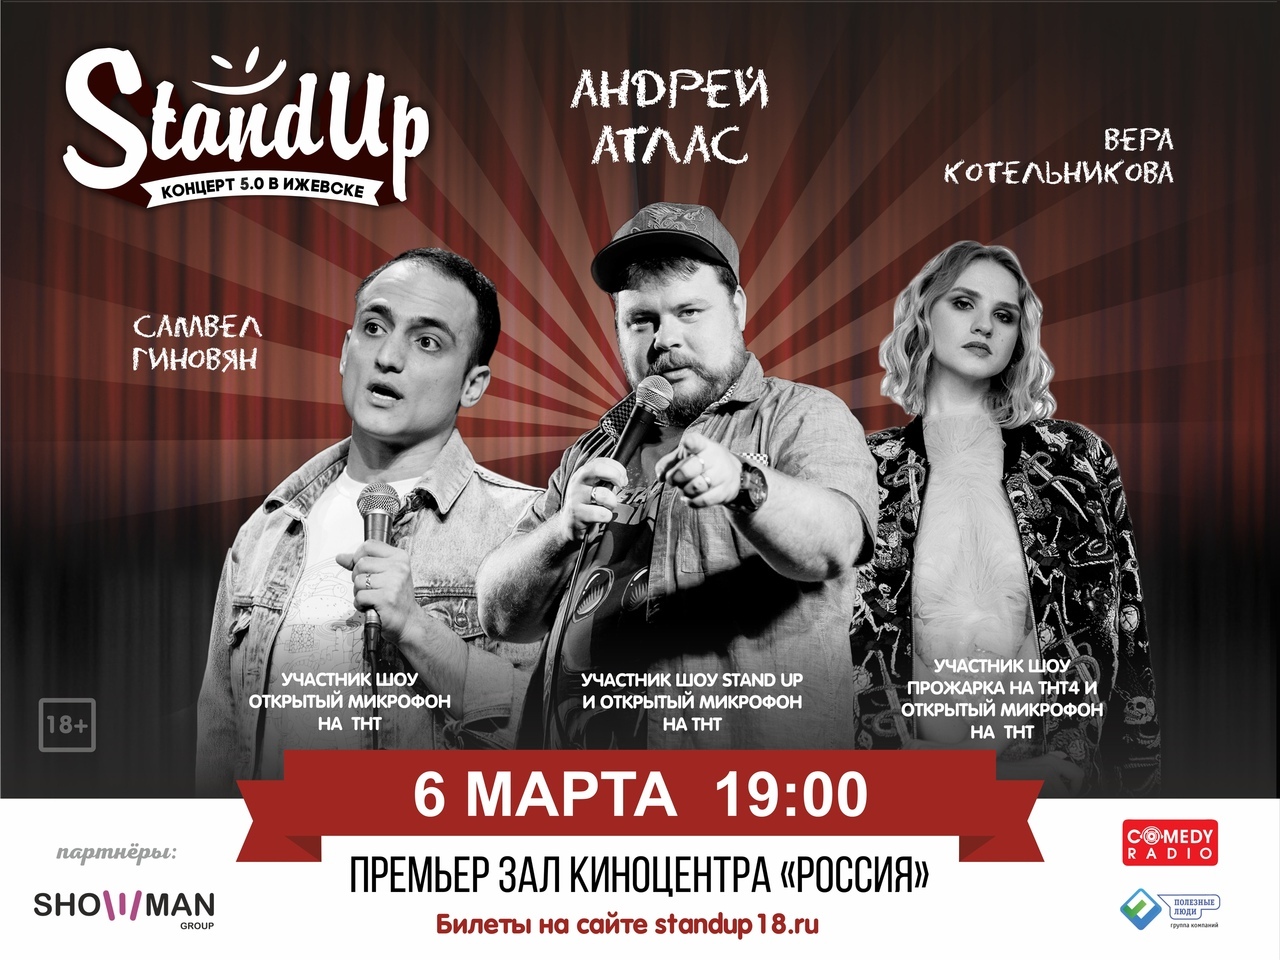 Афиша Ижевска — Большой StandUp концерт 5.0